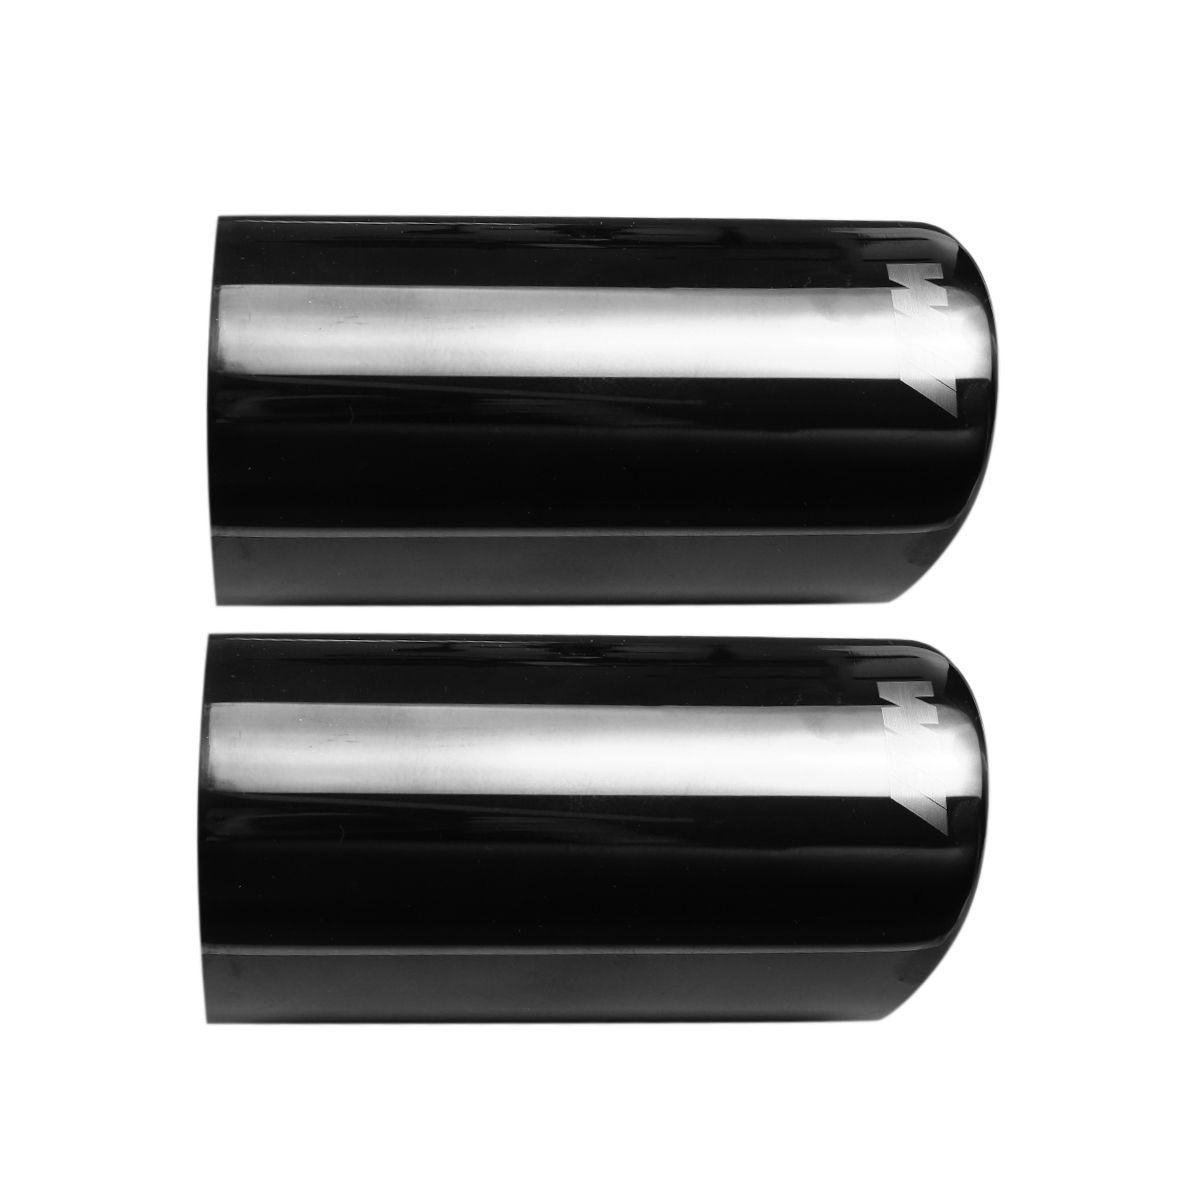 2Pc-Titanium-Black-Exhaust-Muffler-Tail-Pipe-Tip-For-BMW-E90-E92-325i-328i-06-10-1460990